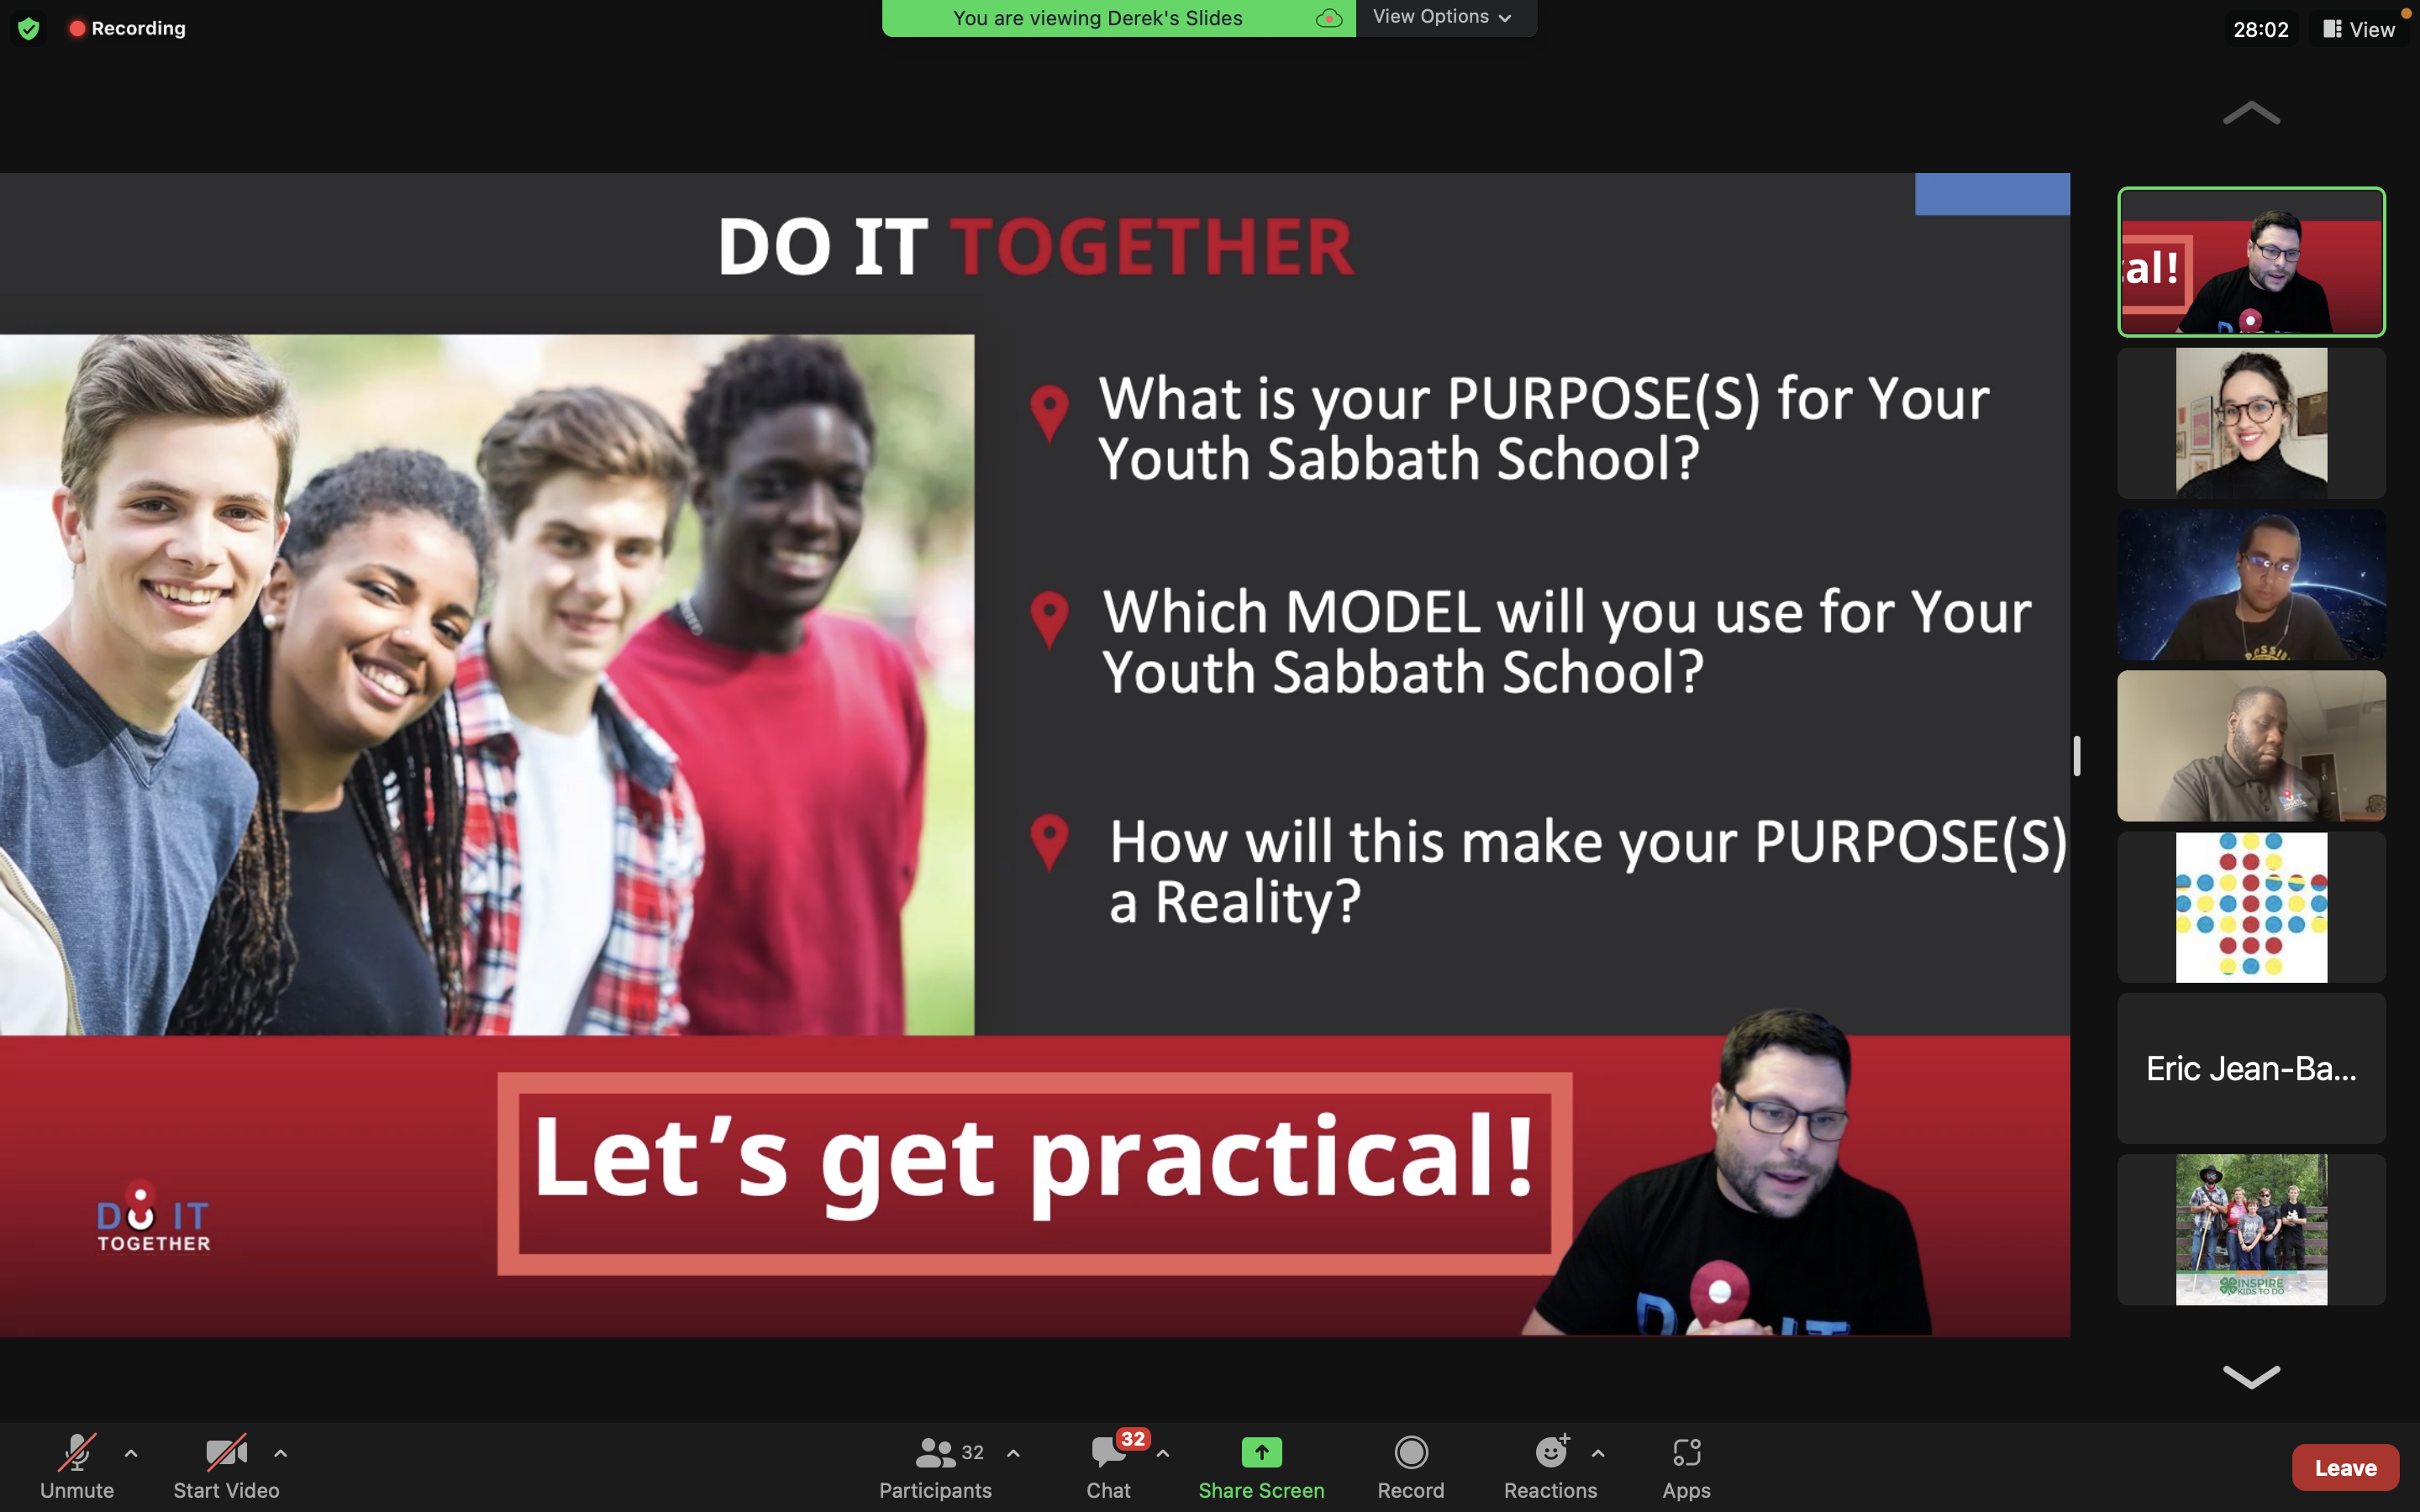 1) Derek Richter breaks down key questions for Youth Sabbath School leaders